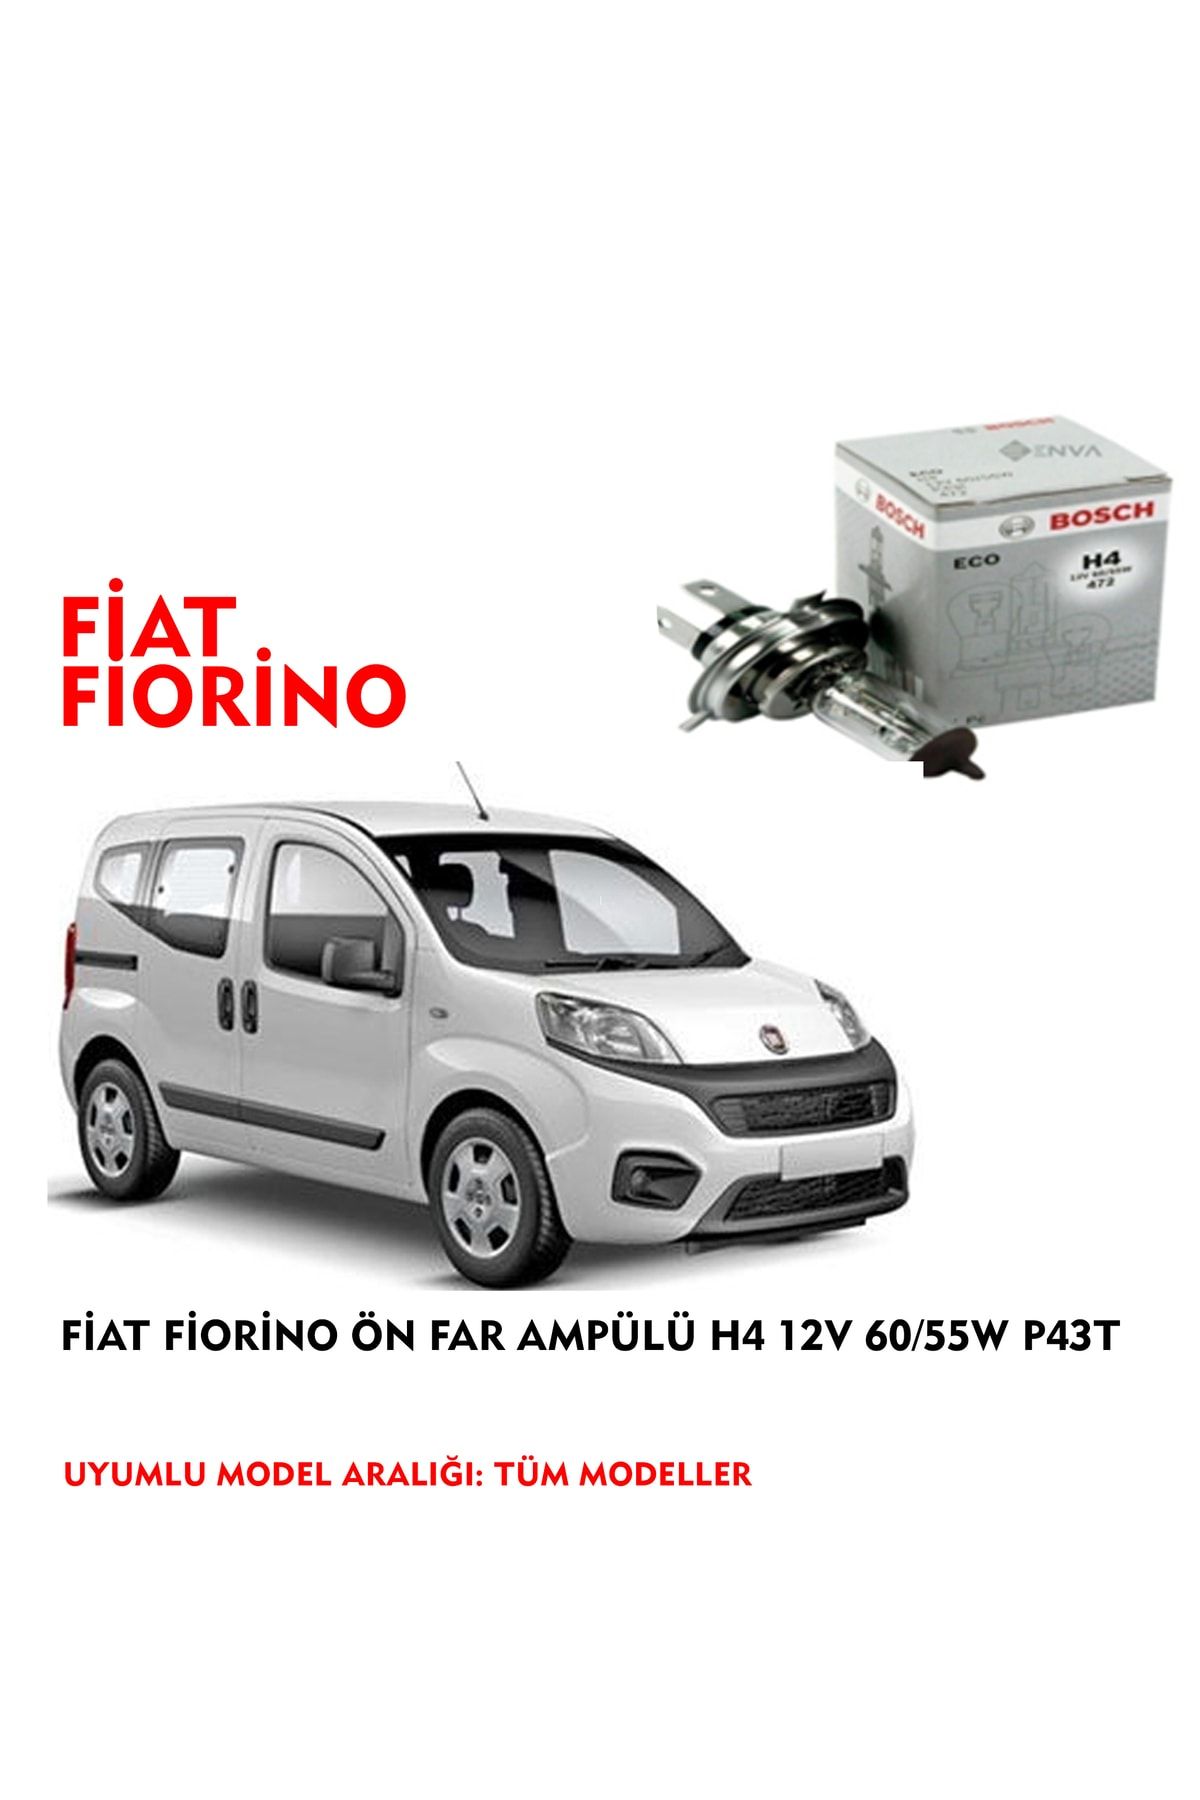 Bosch Fiat Fiorino Ön Far Ampülü H4 12v 60/55w P43t